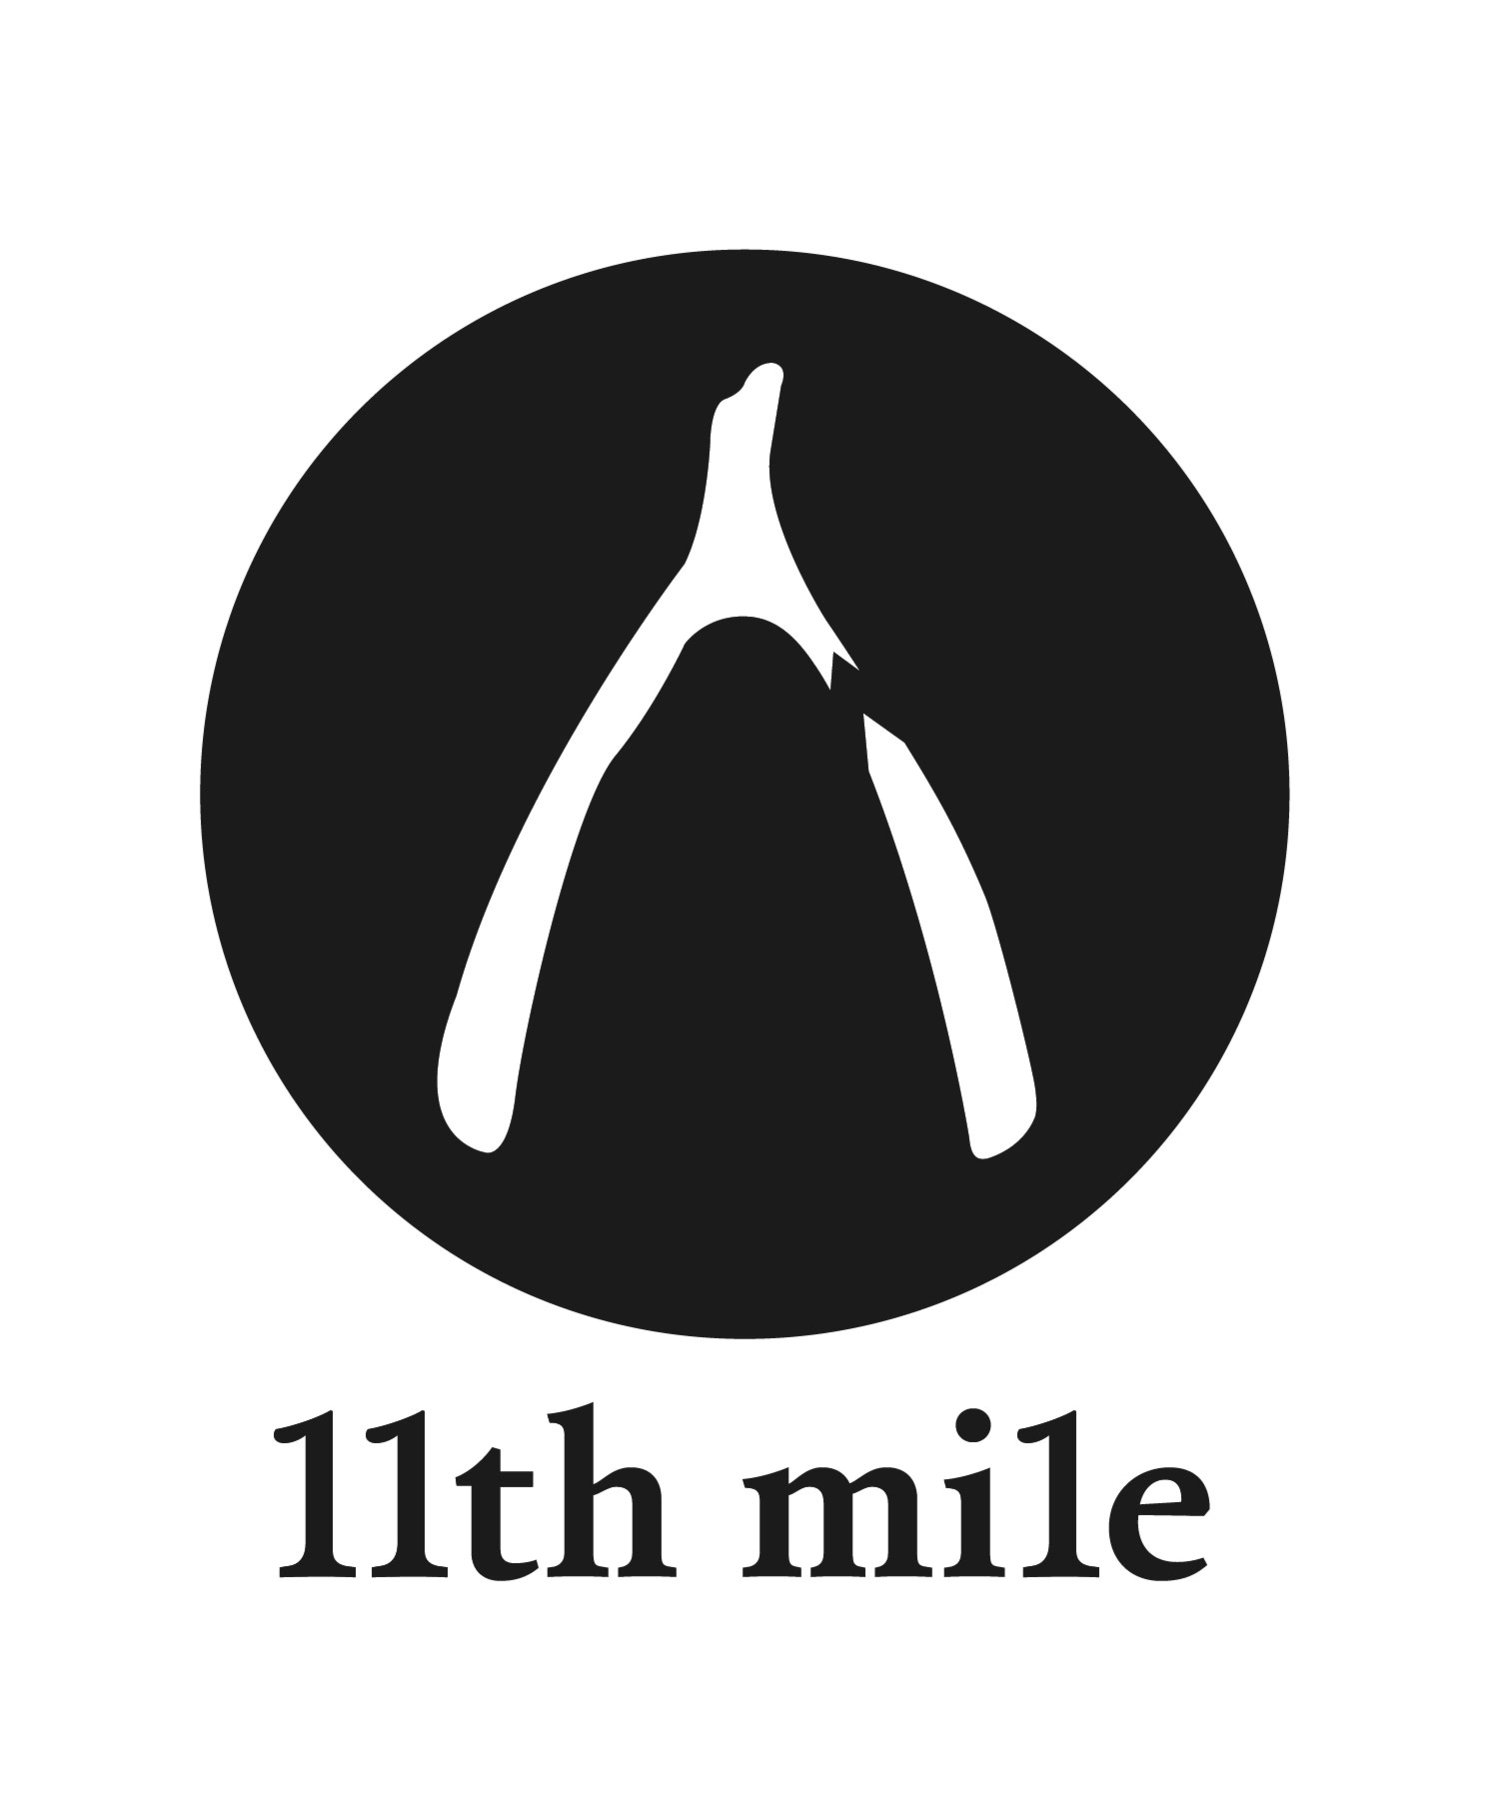 11th mile